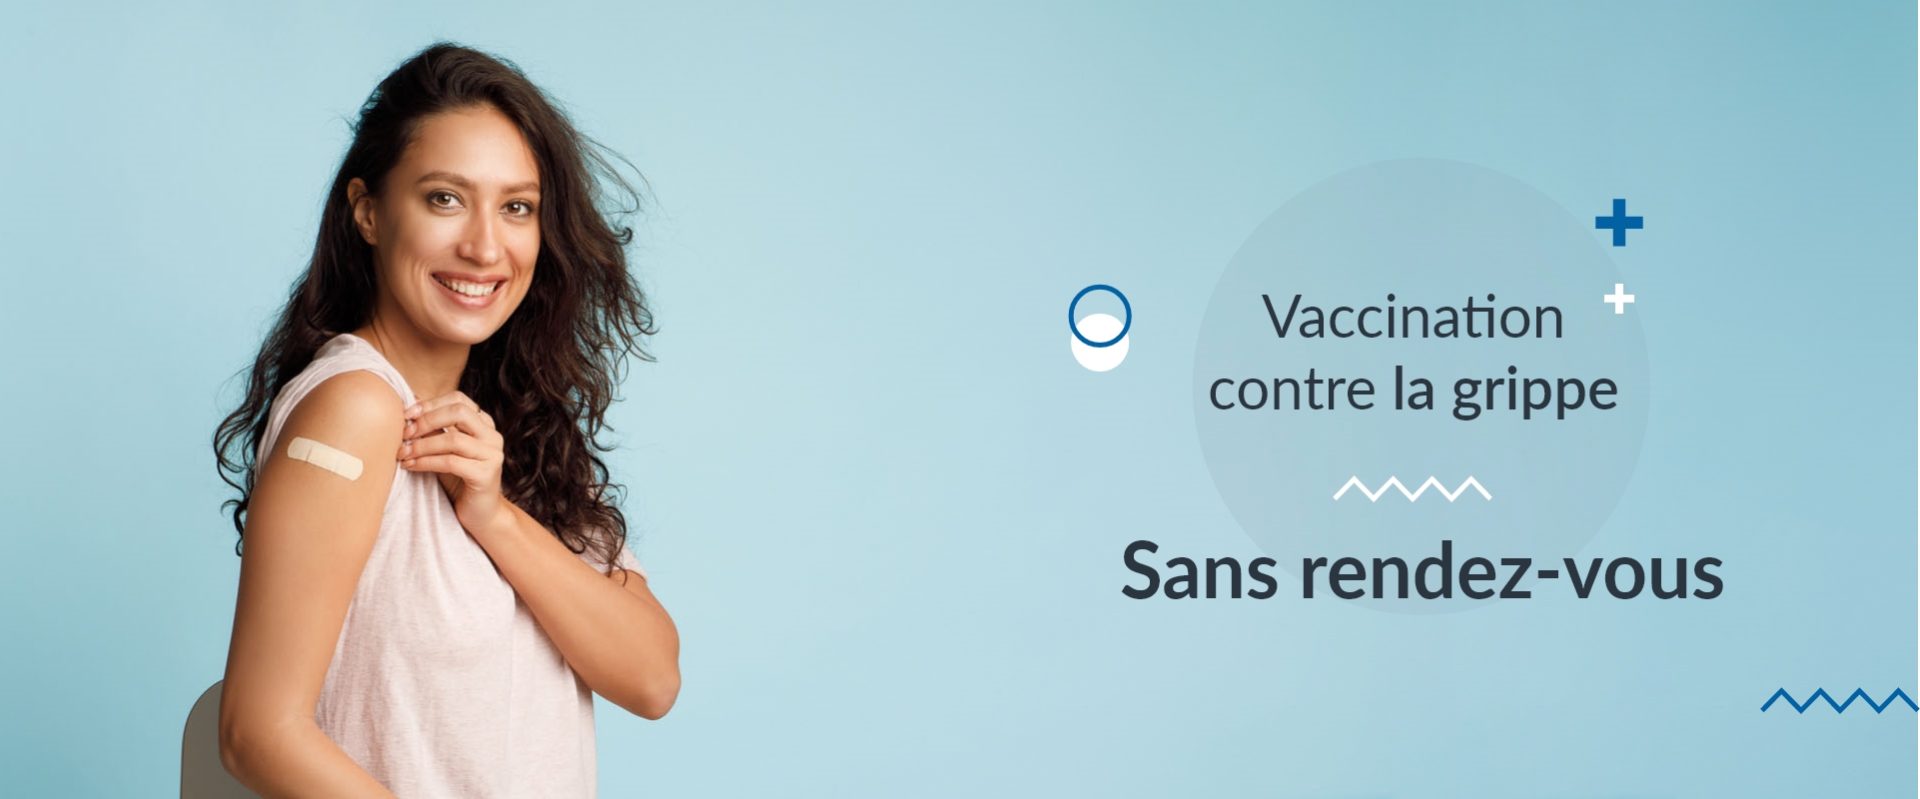 Pharmacie De Chanzy Pharmacie Laval Slide Vaccination 183